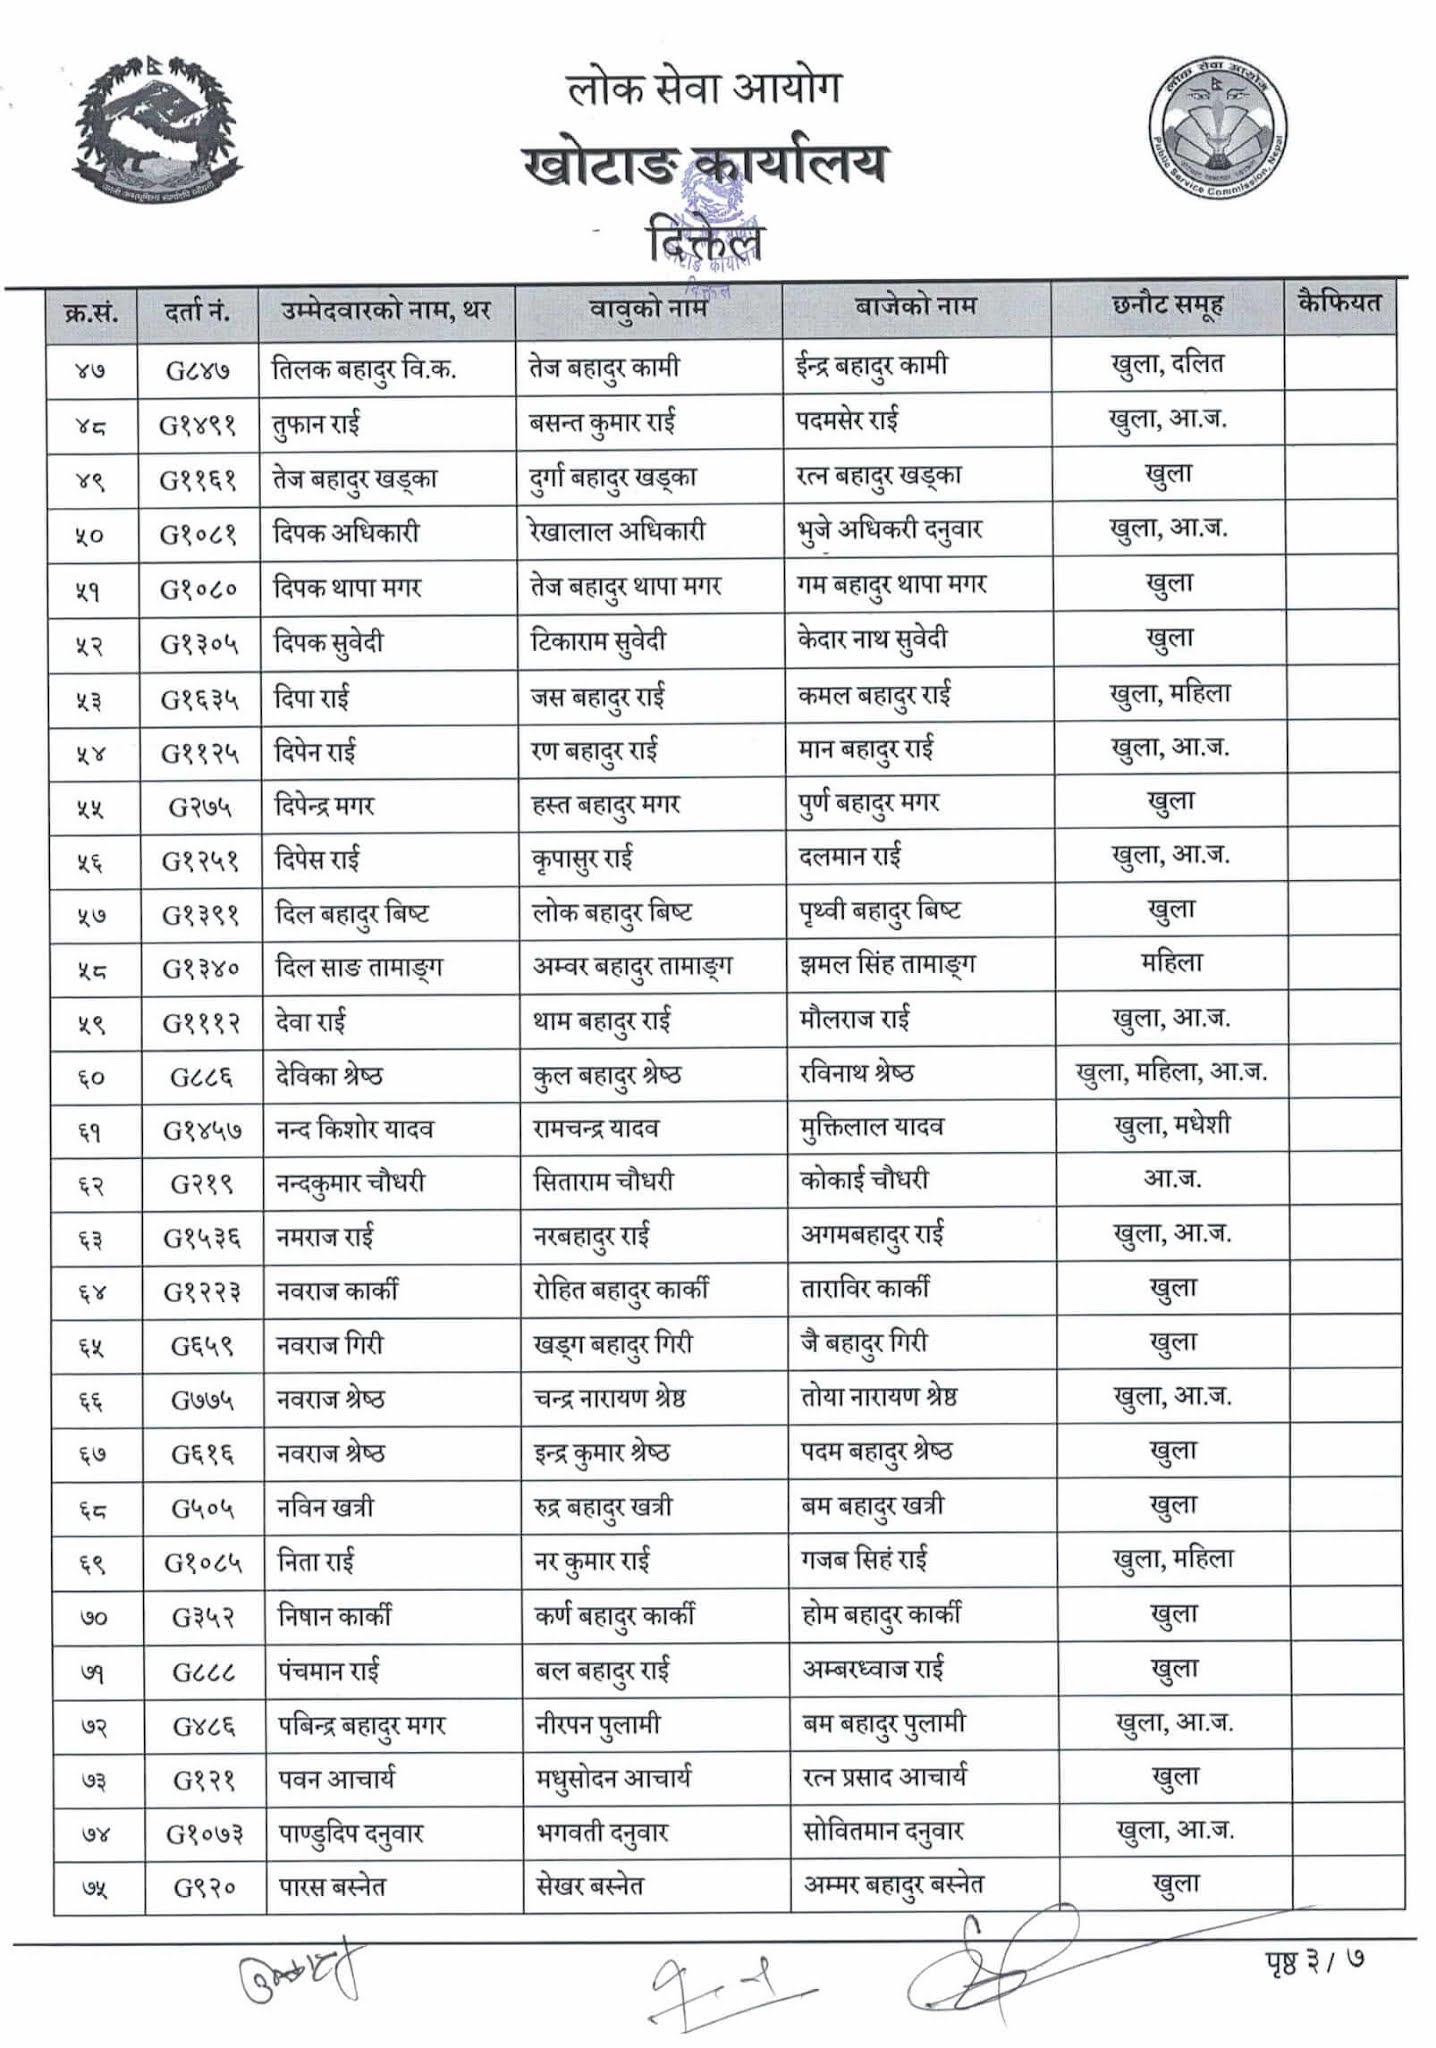 Nepal Army Sainya Written Exam Result Gaighat